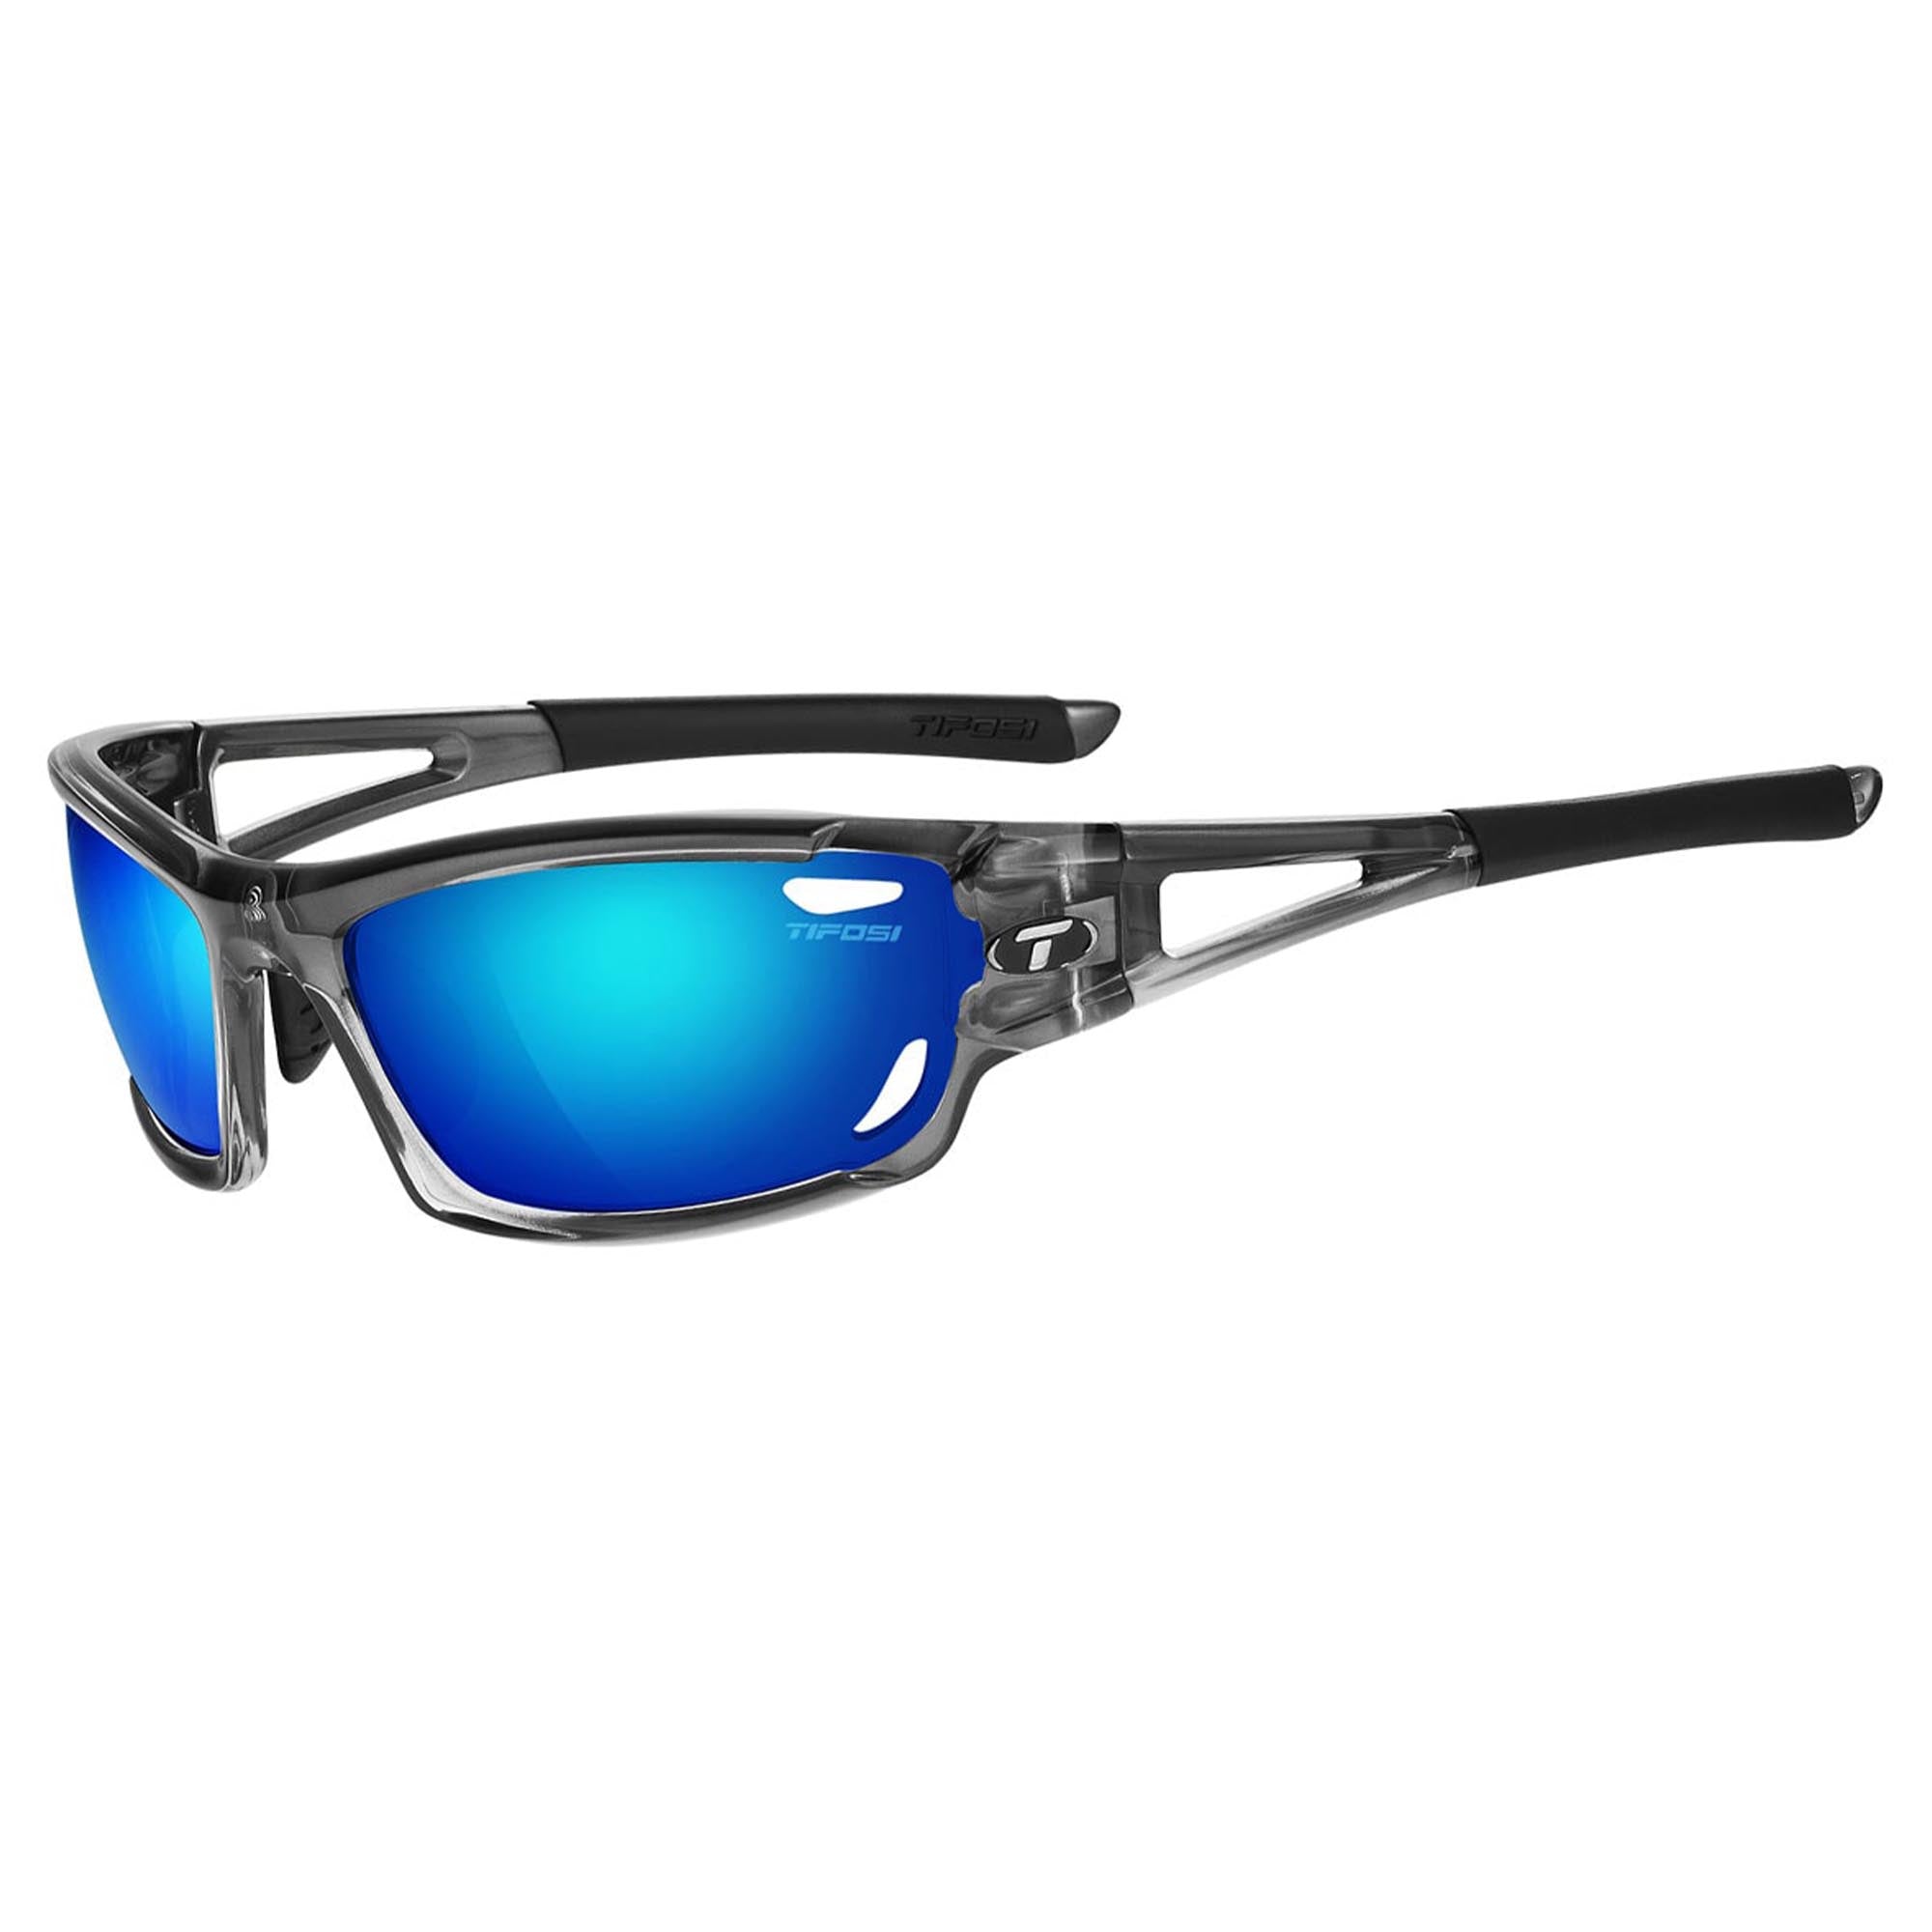 Tifosi Dolomite 2.0 Clarion Lens Sunglasses